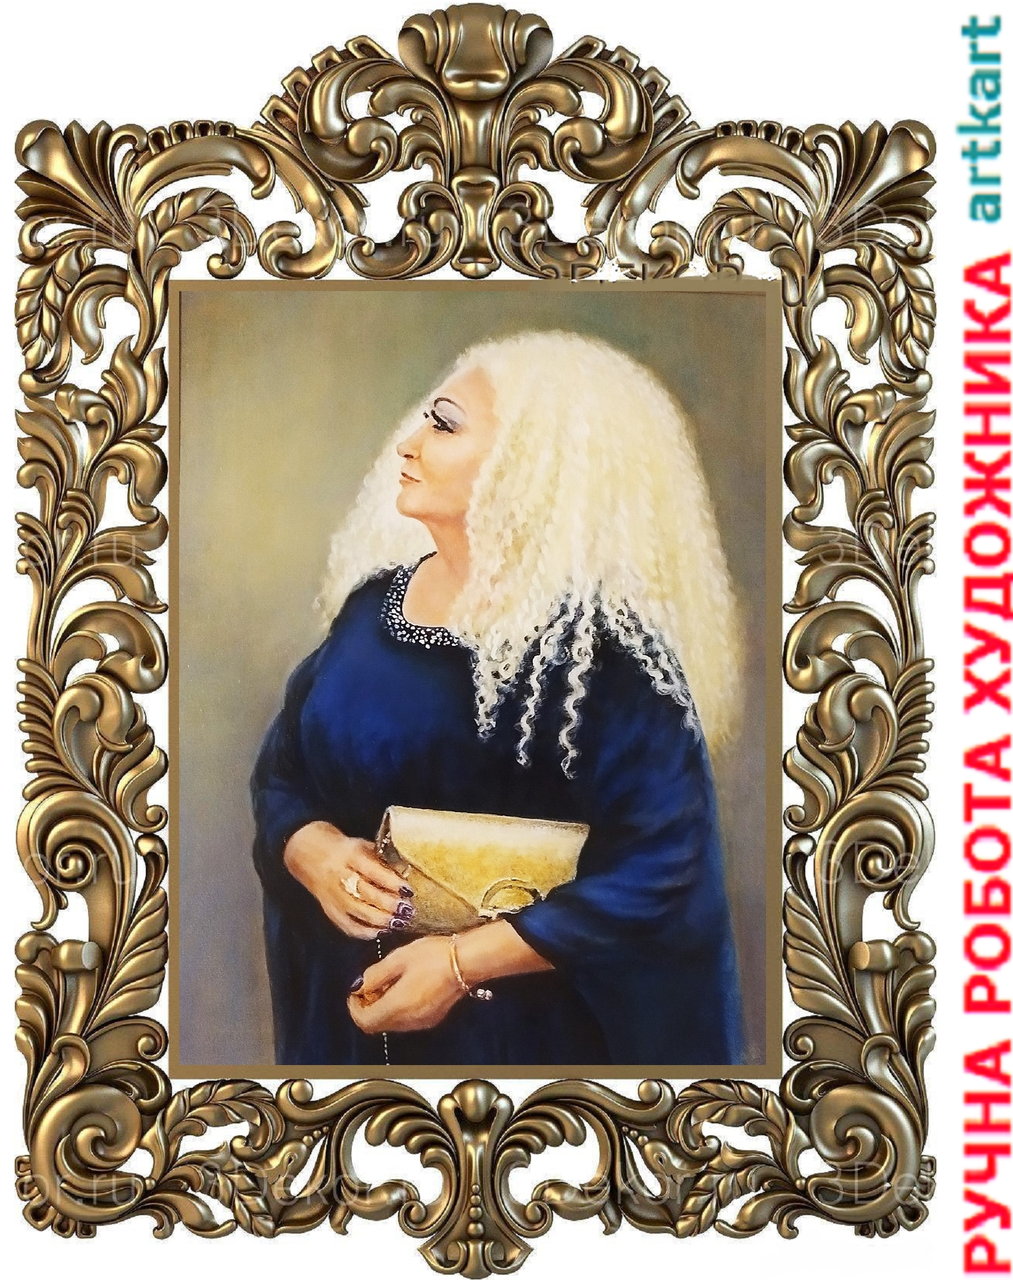 

Портрет по фото на заказ художнику Картина маслом на холсте Живопись масло холст Подарок женщине мужчине семье